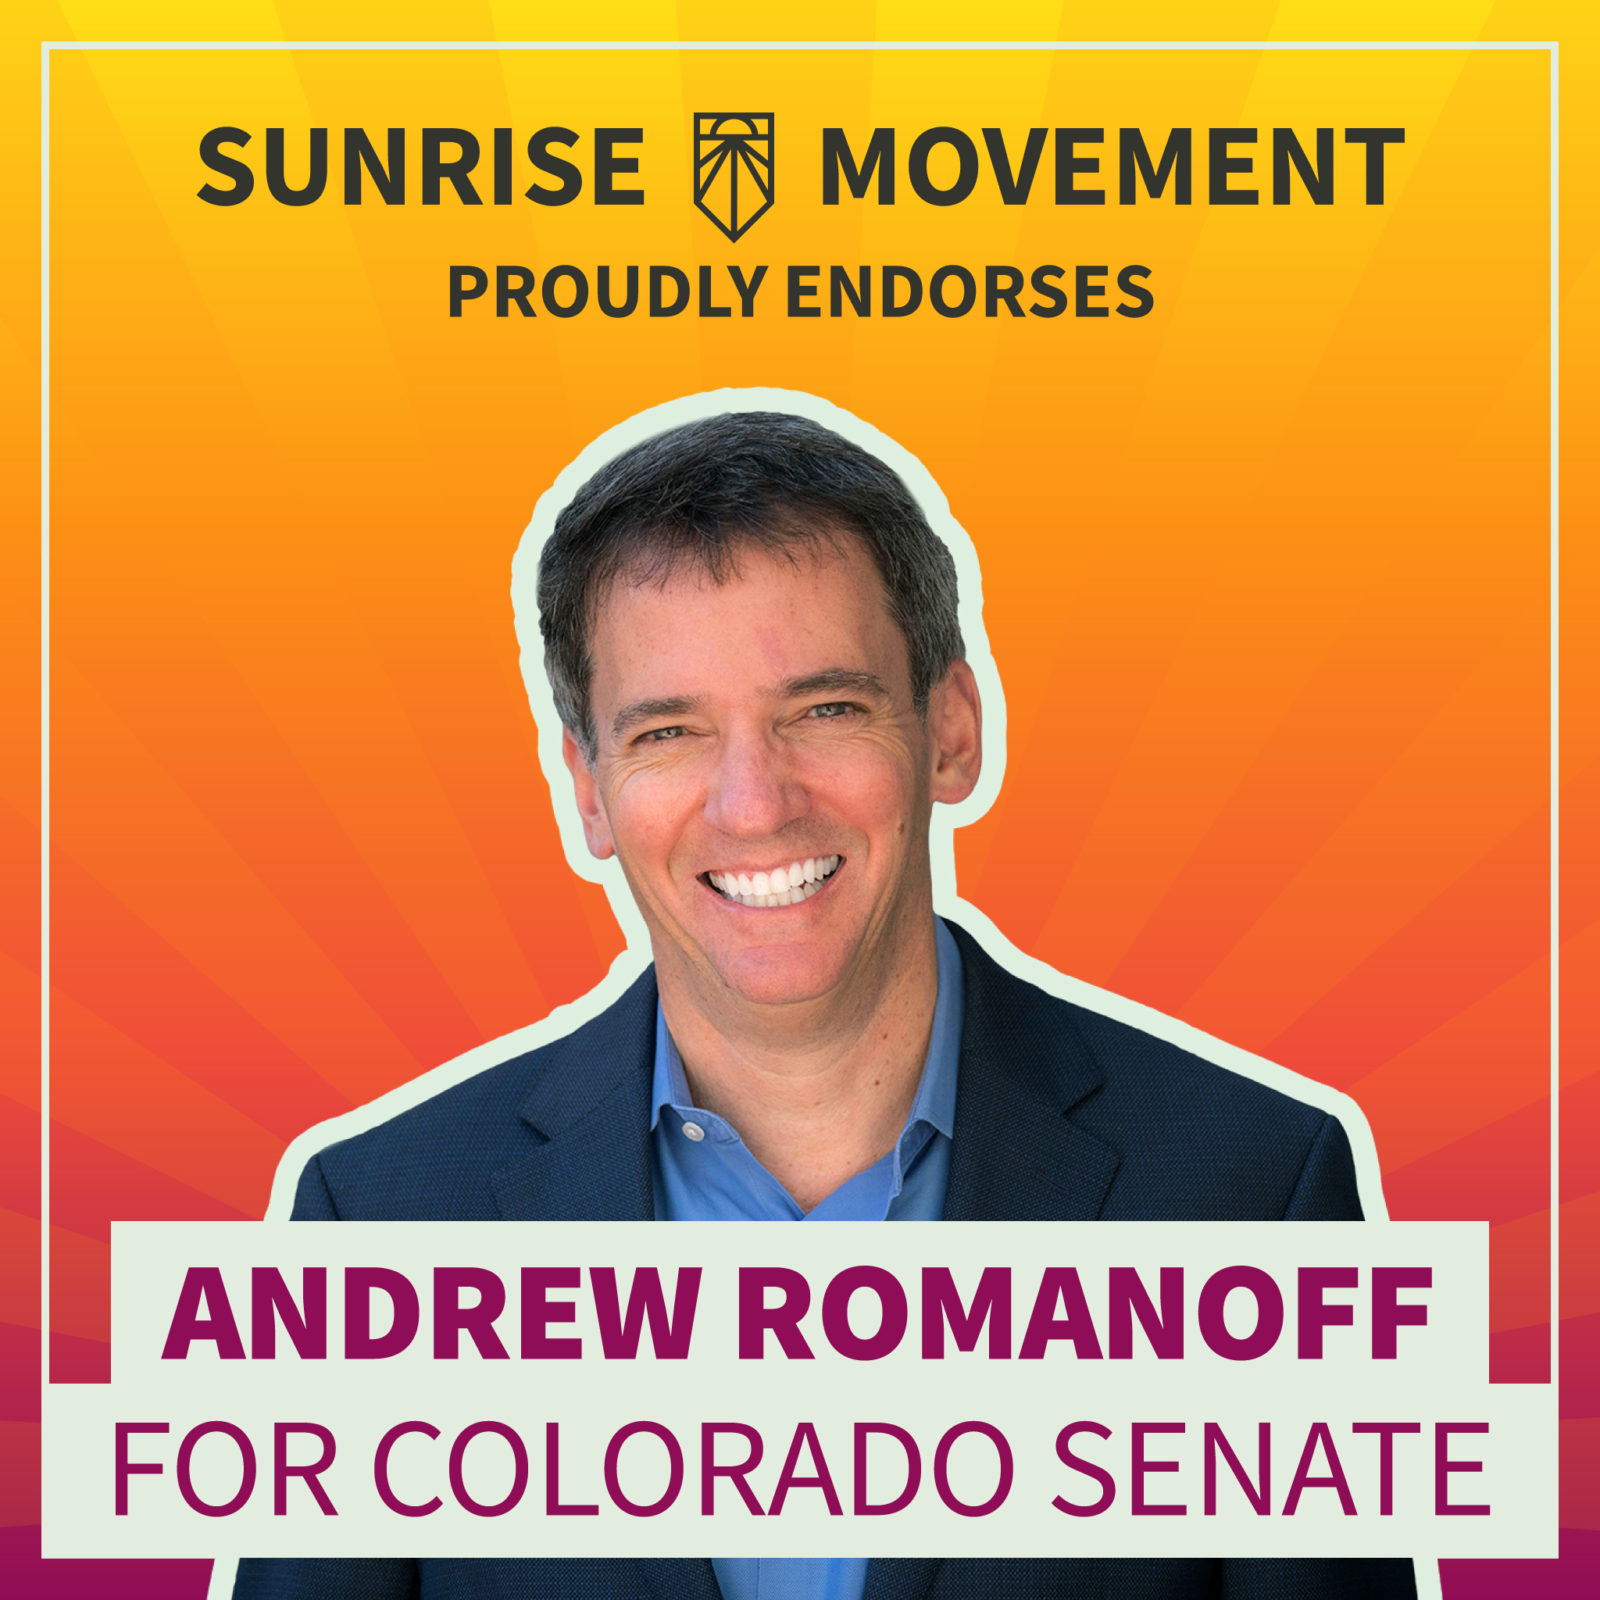 Фотография Эндрю Романова с текстом: «Движение восхода солнца» с гордостью поддерживает кандидатуру Эндрю Романоффа в сенат Колорадо.